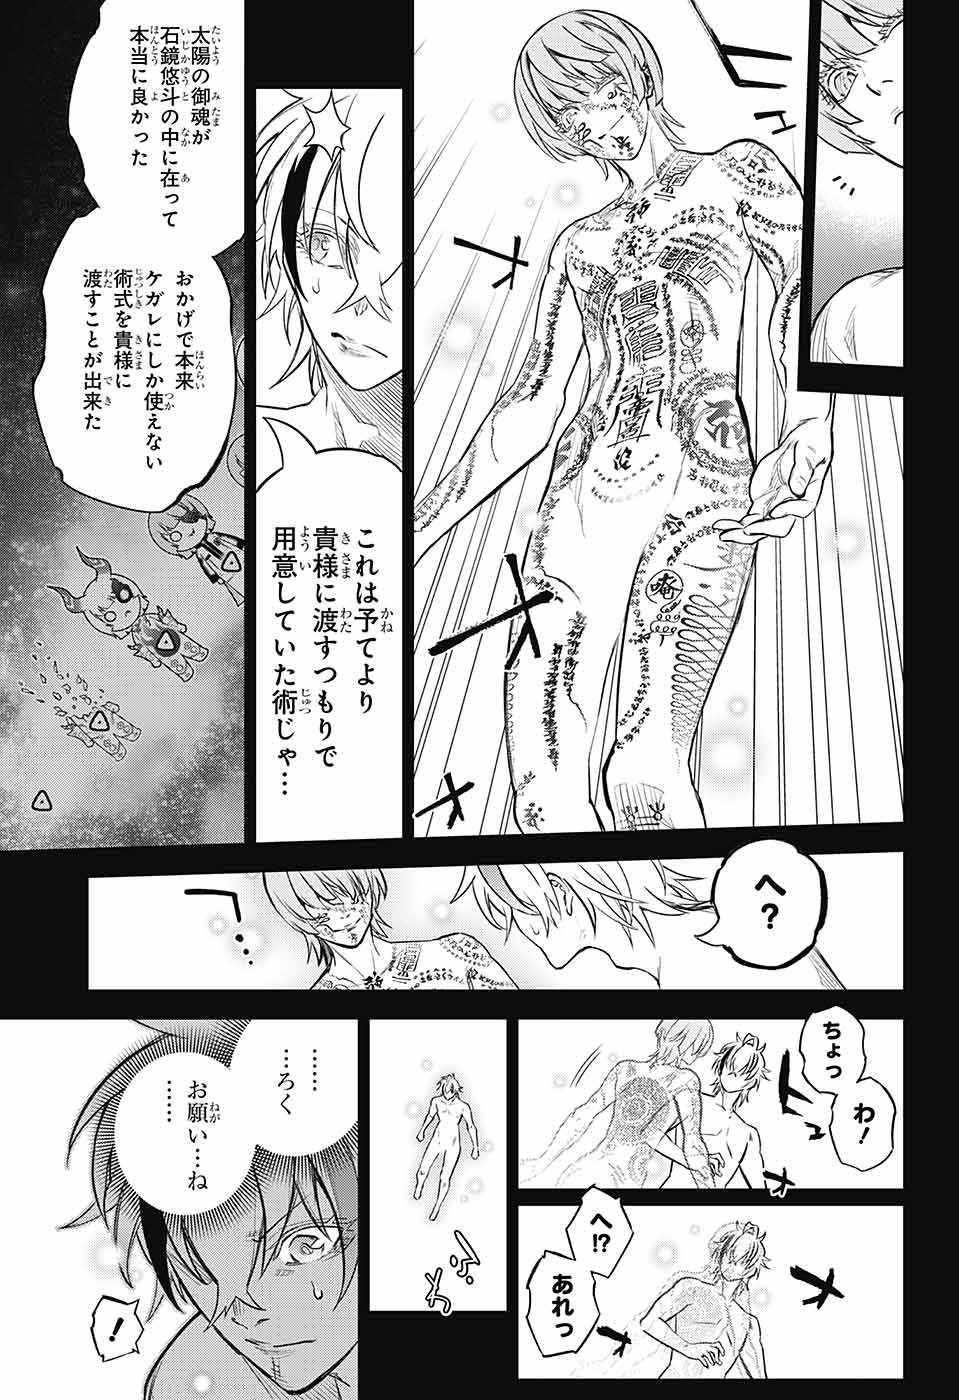 Sousei no Onmyouji - Chapter 113 - Page 7